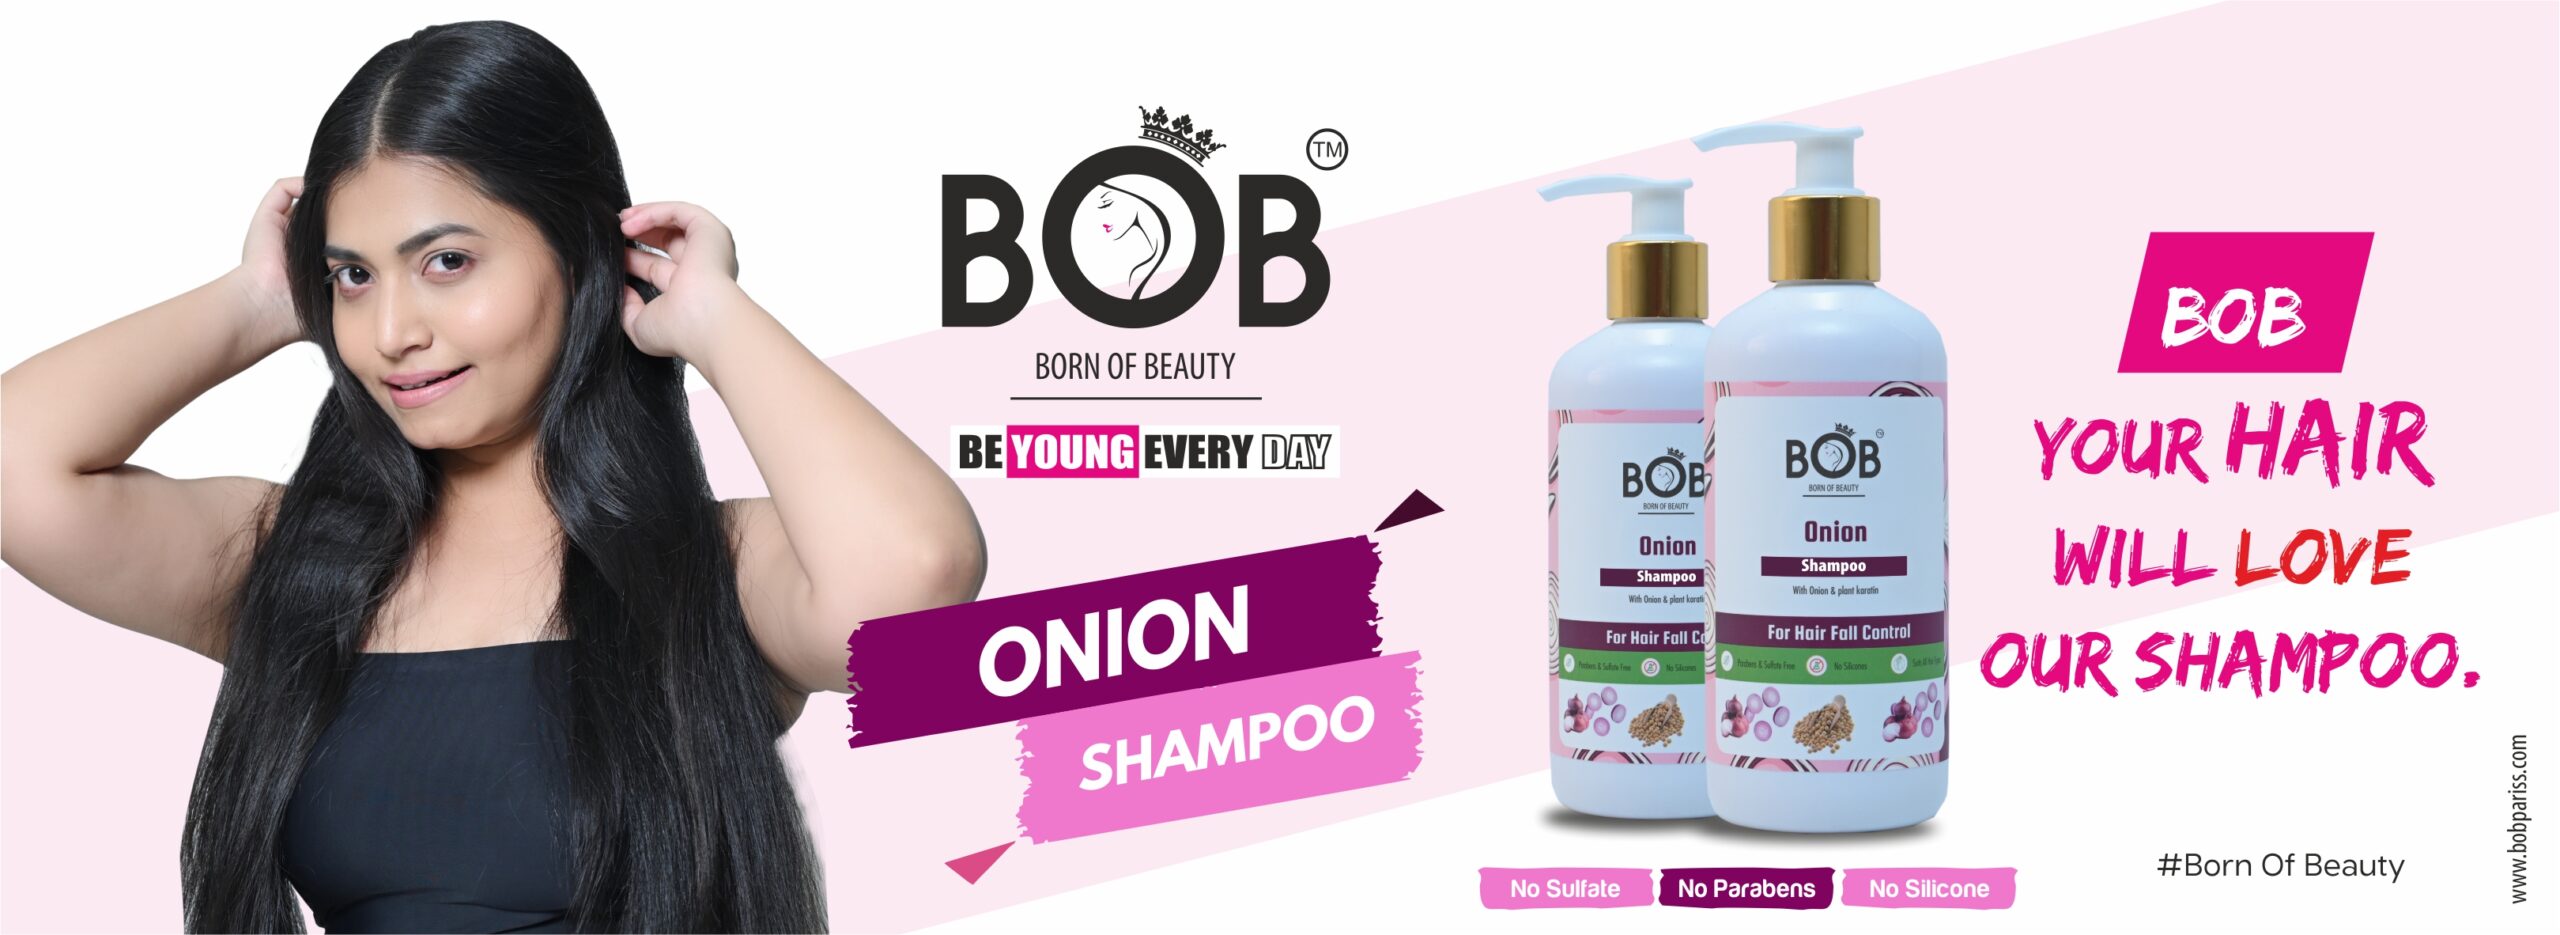 onion shampoo for strong silky hair